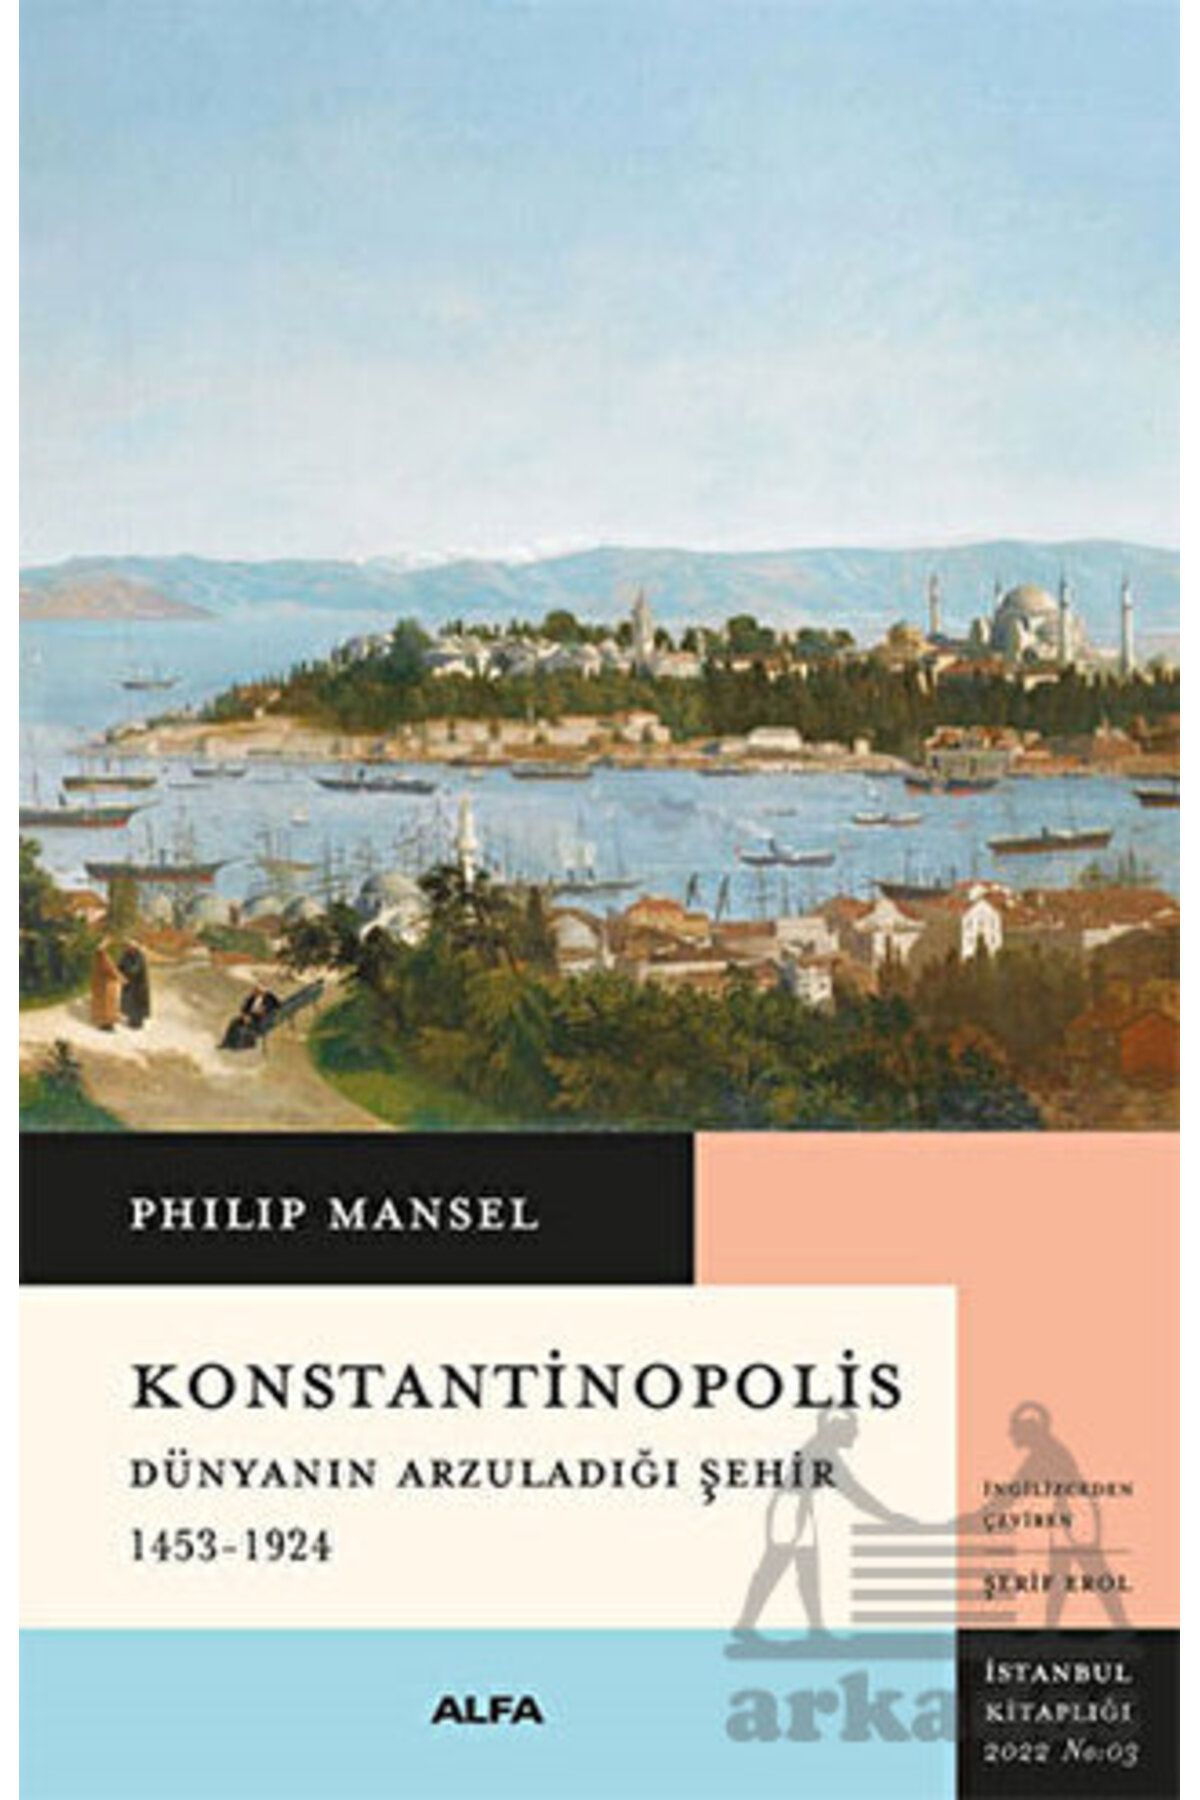 Alfa Yayınları Konstantinopolis - Dünyanın Arzuladığı Şehir 1453 - 1924